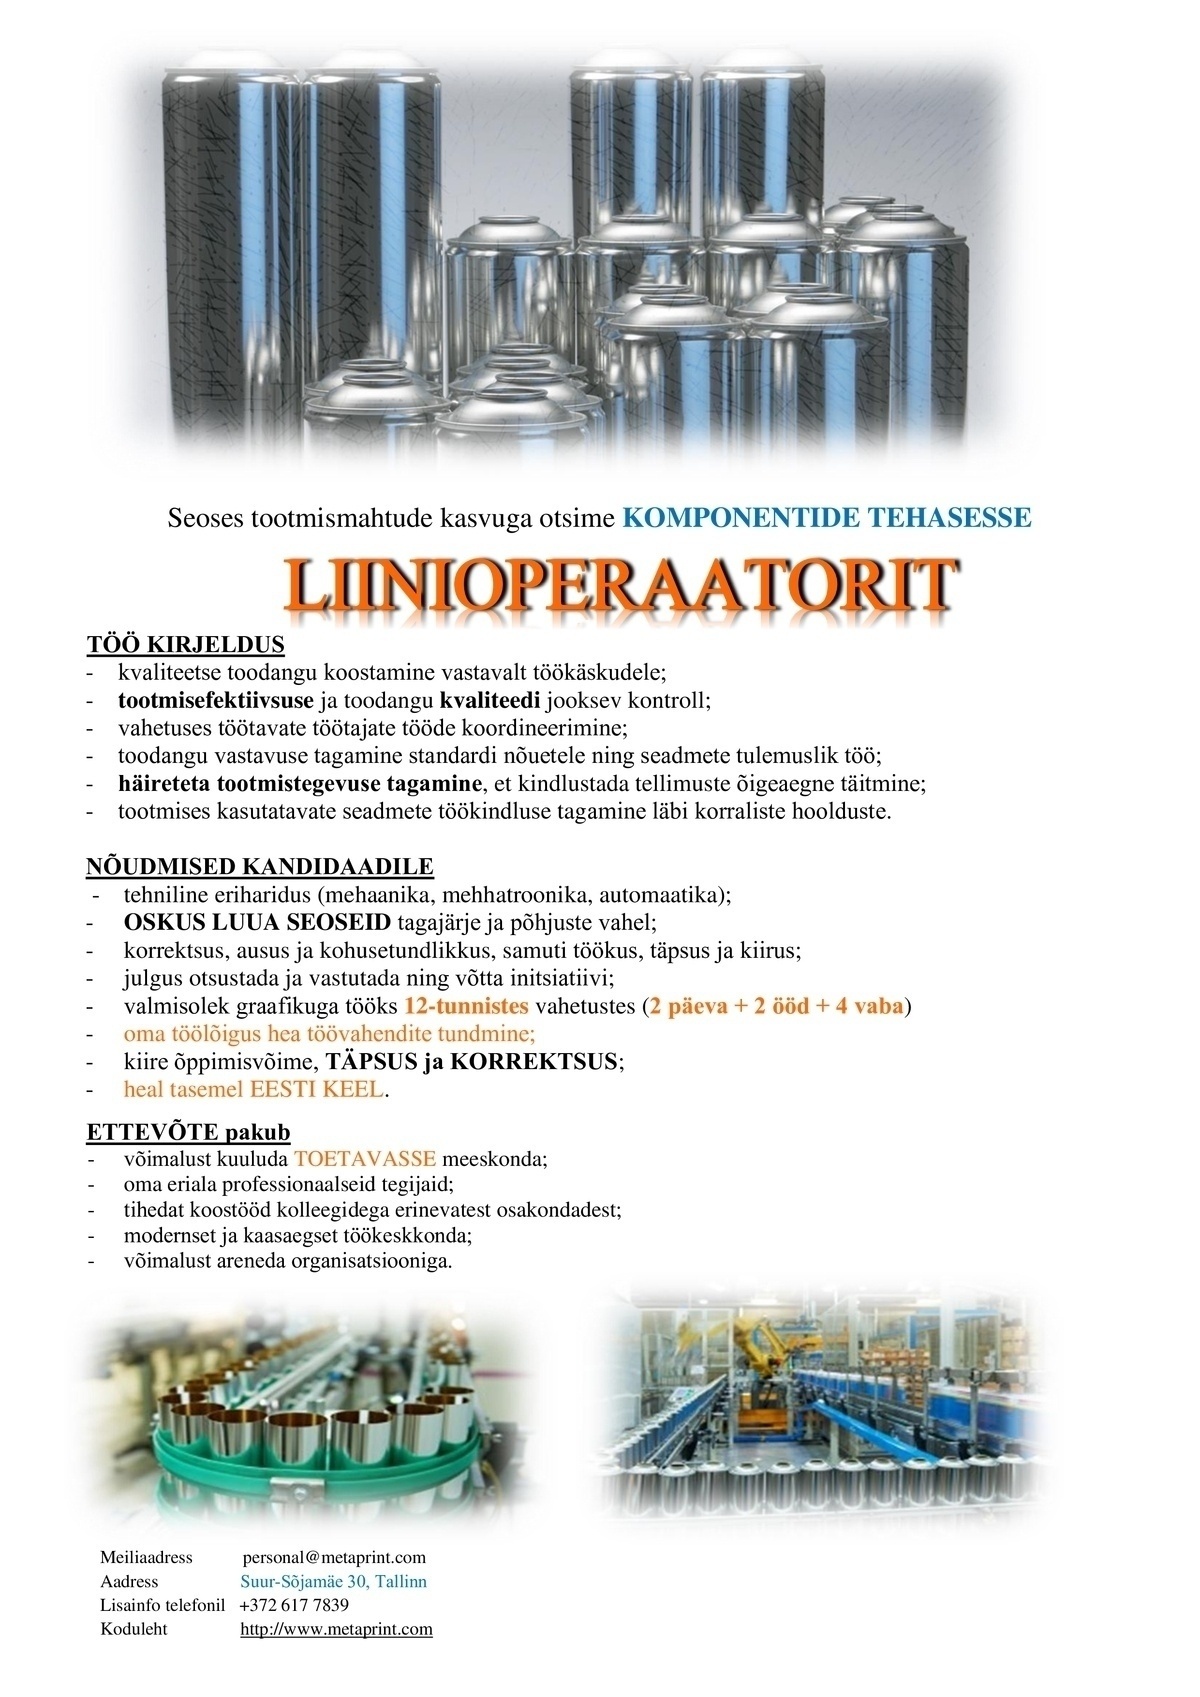 Metaprint AS Liinioperaator (Komponentide tehas)